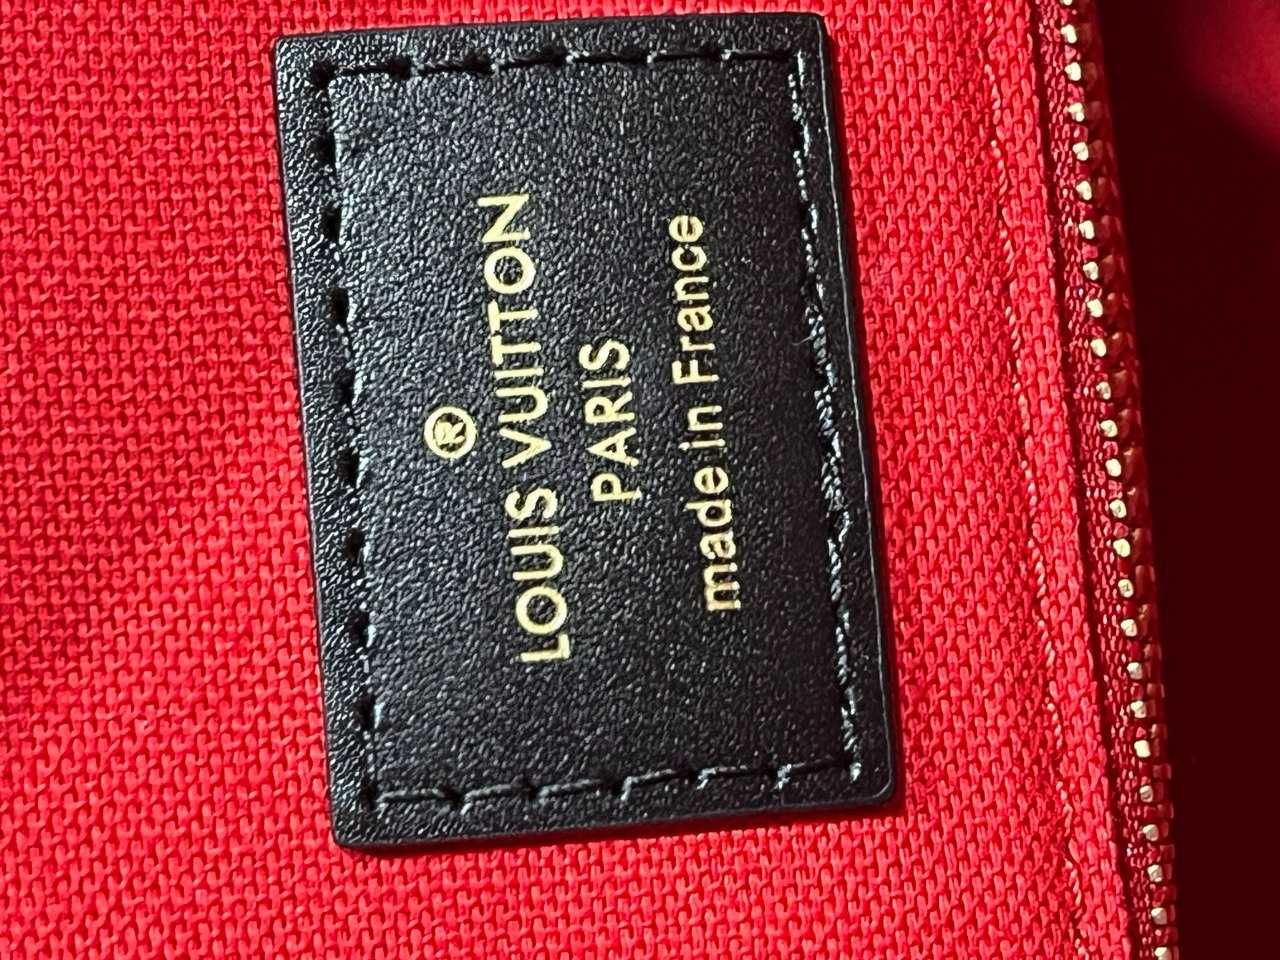 Оригинальная сумка Louis Vuitton